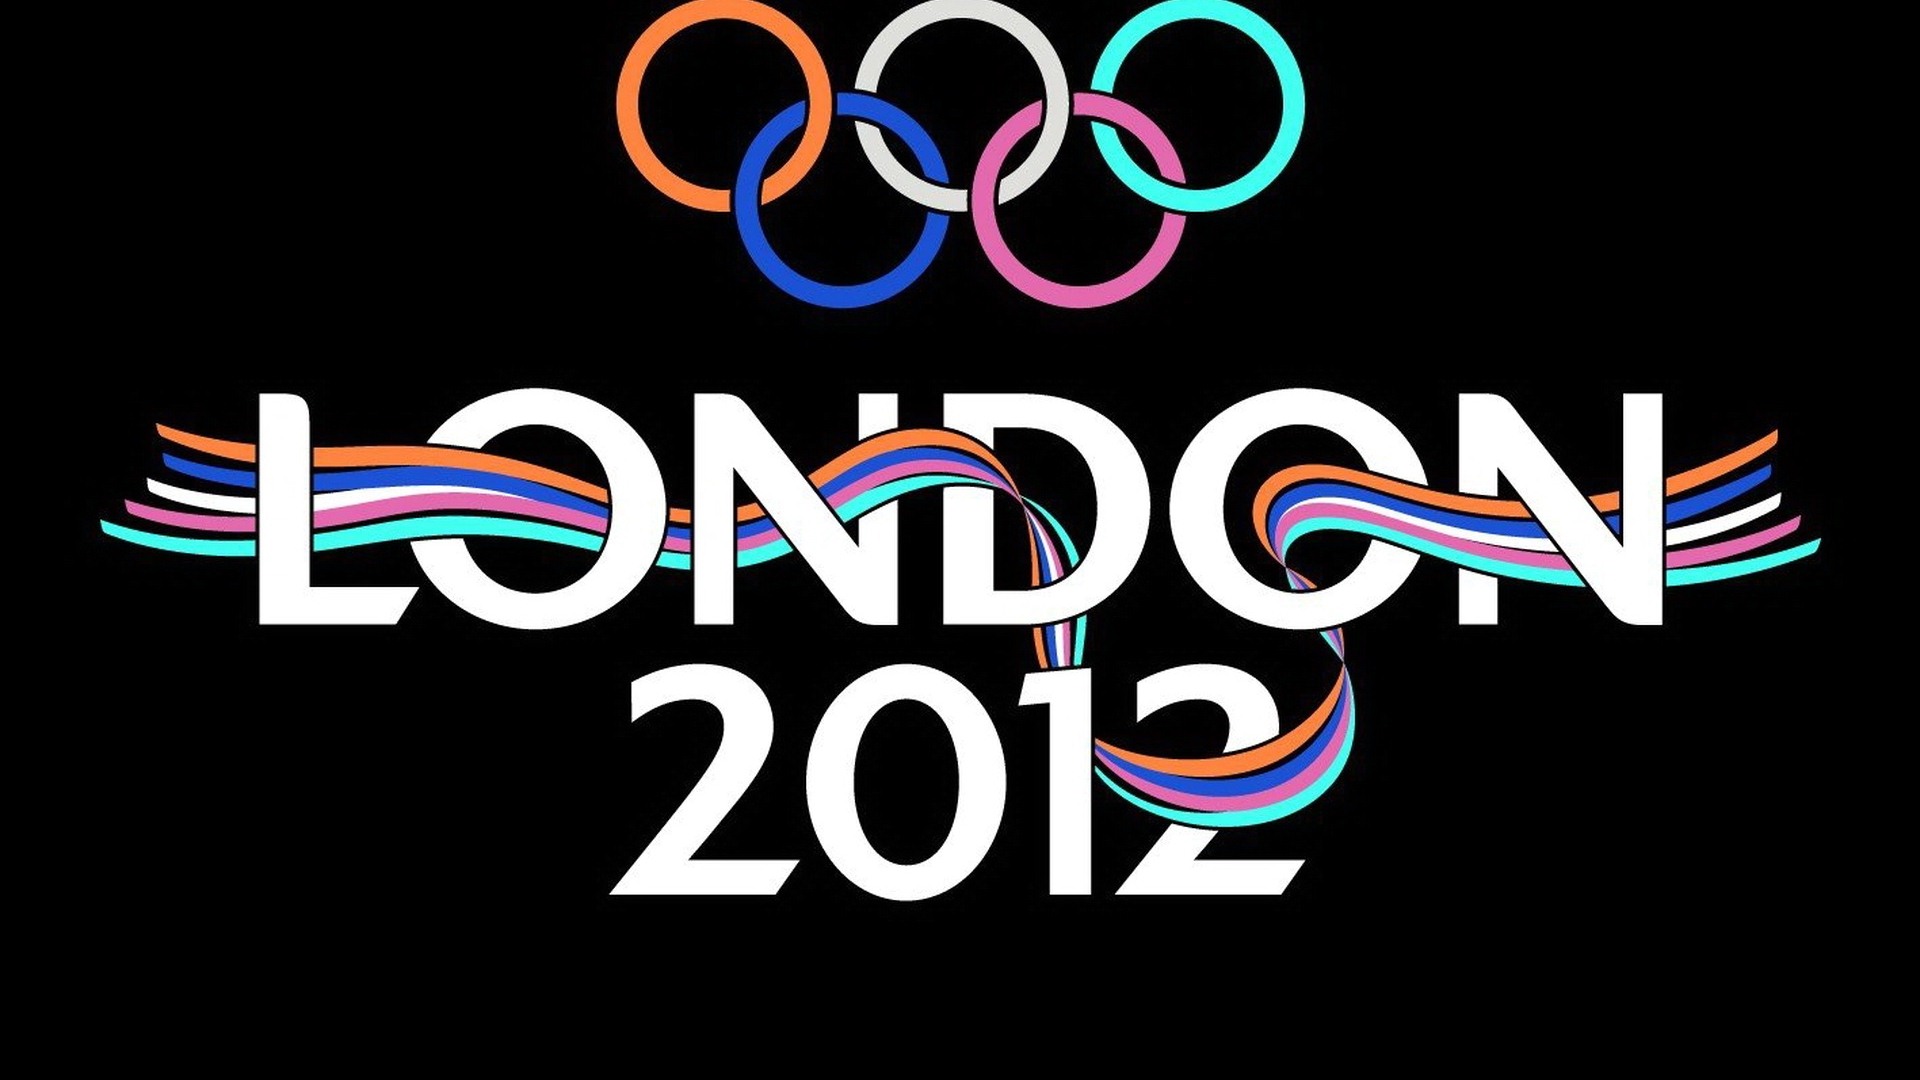 2012伦敦奥运会 主题壁纸(二)1 - 1920x1080